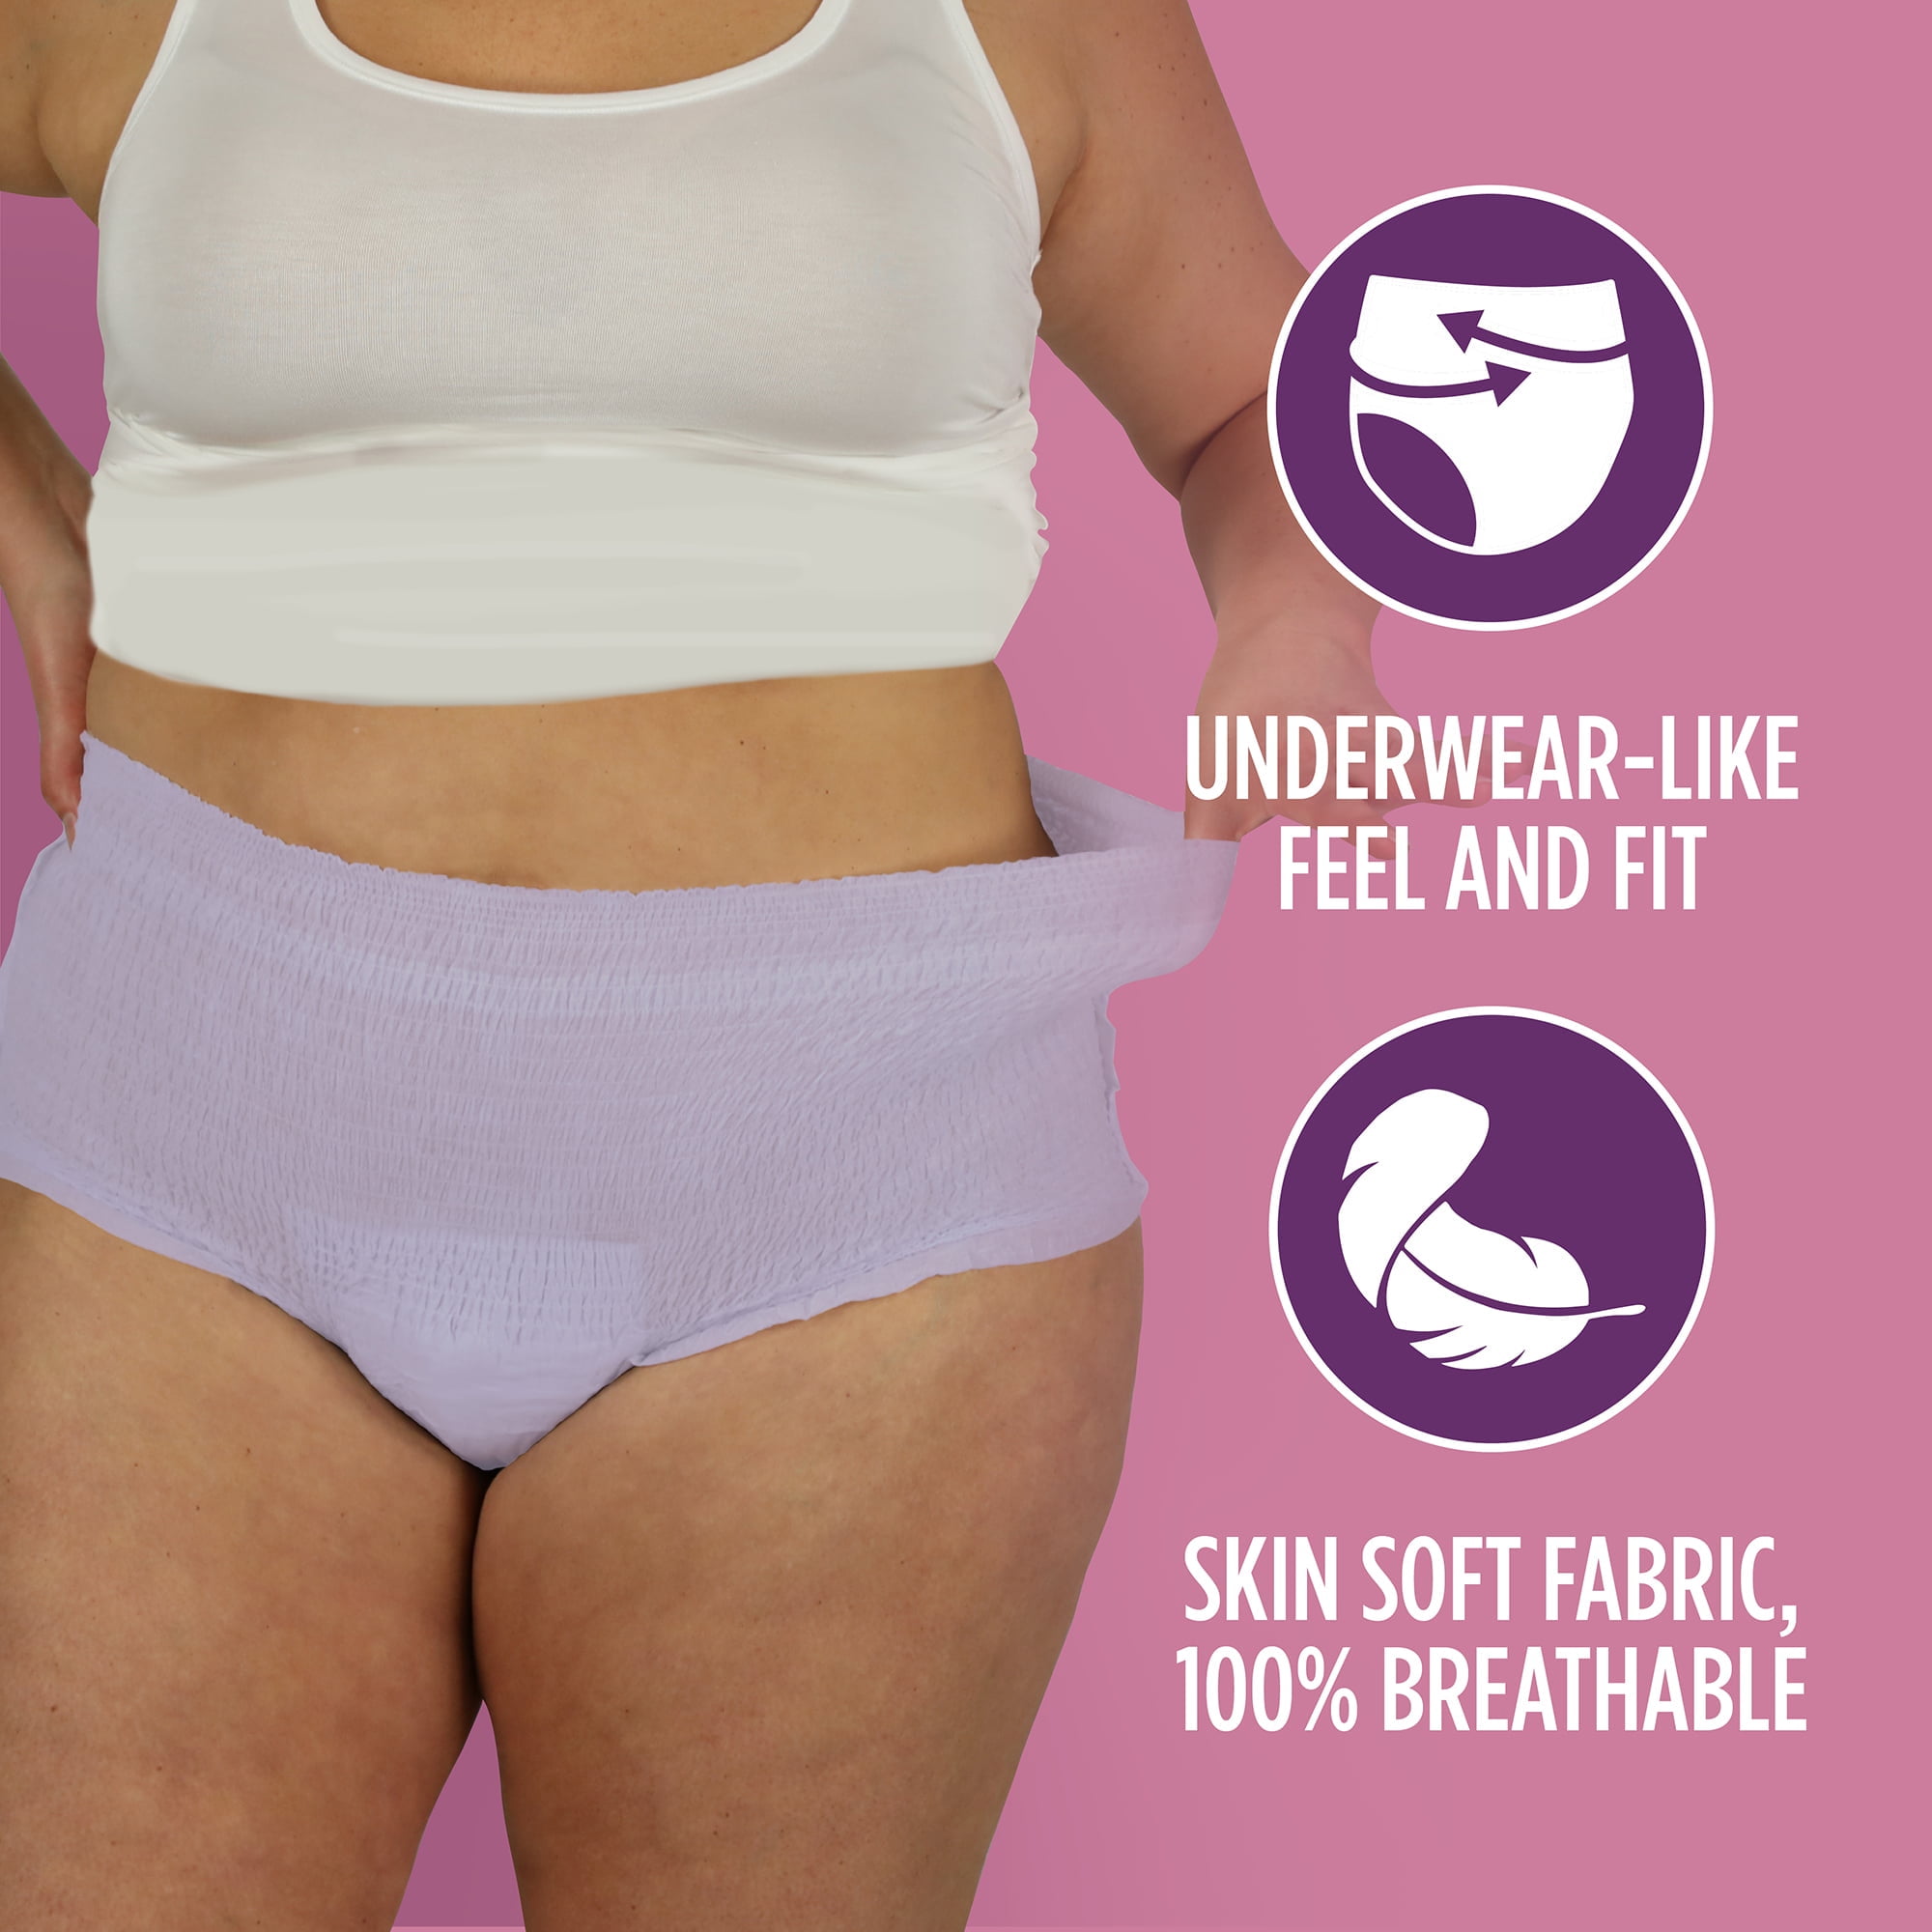 Equate Assurance Women's Underwear S/M 20 count, Light Lavender